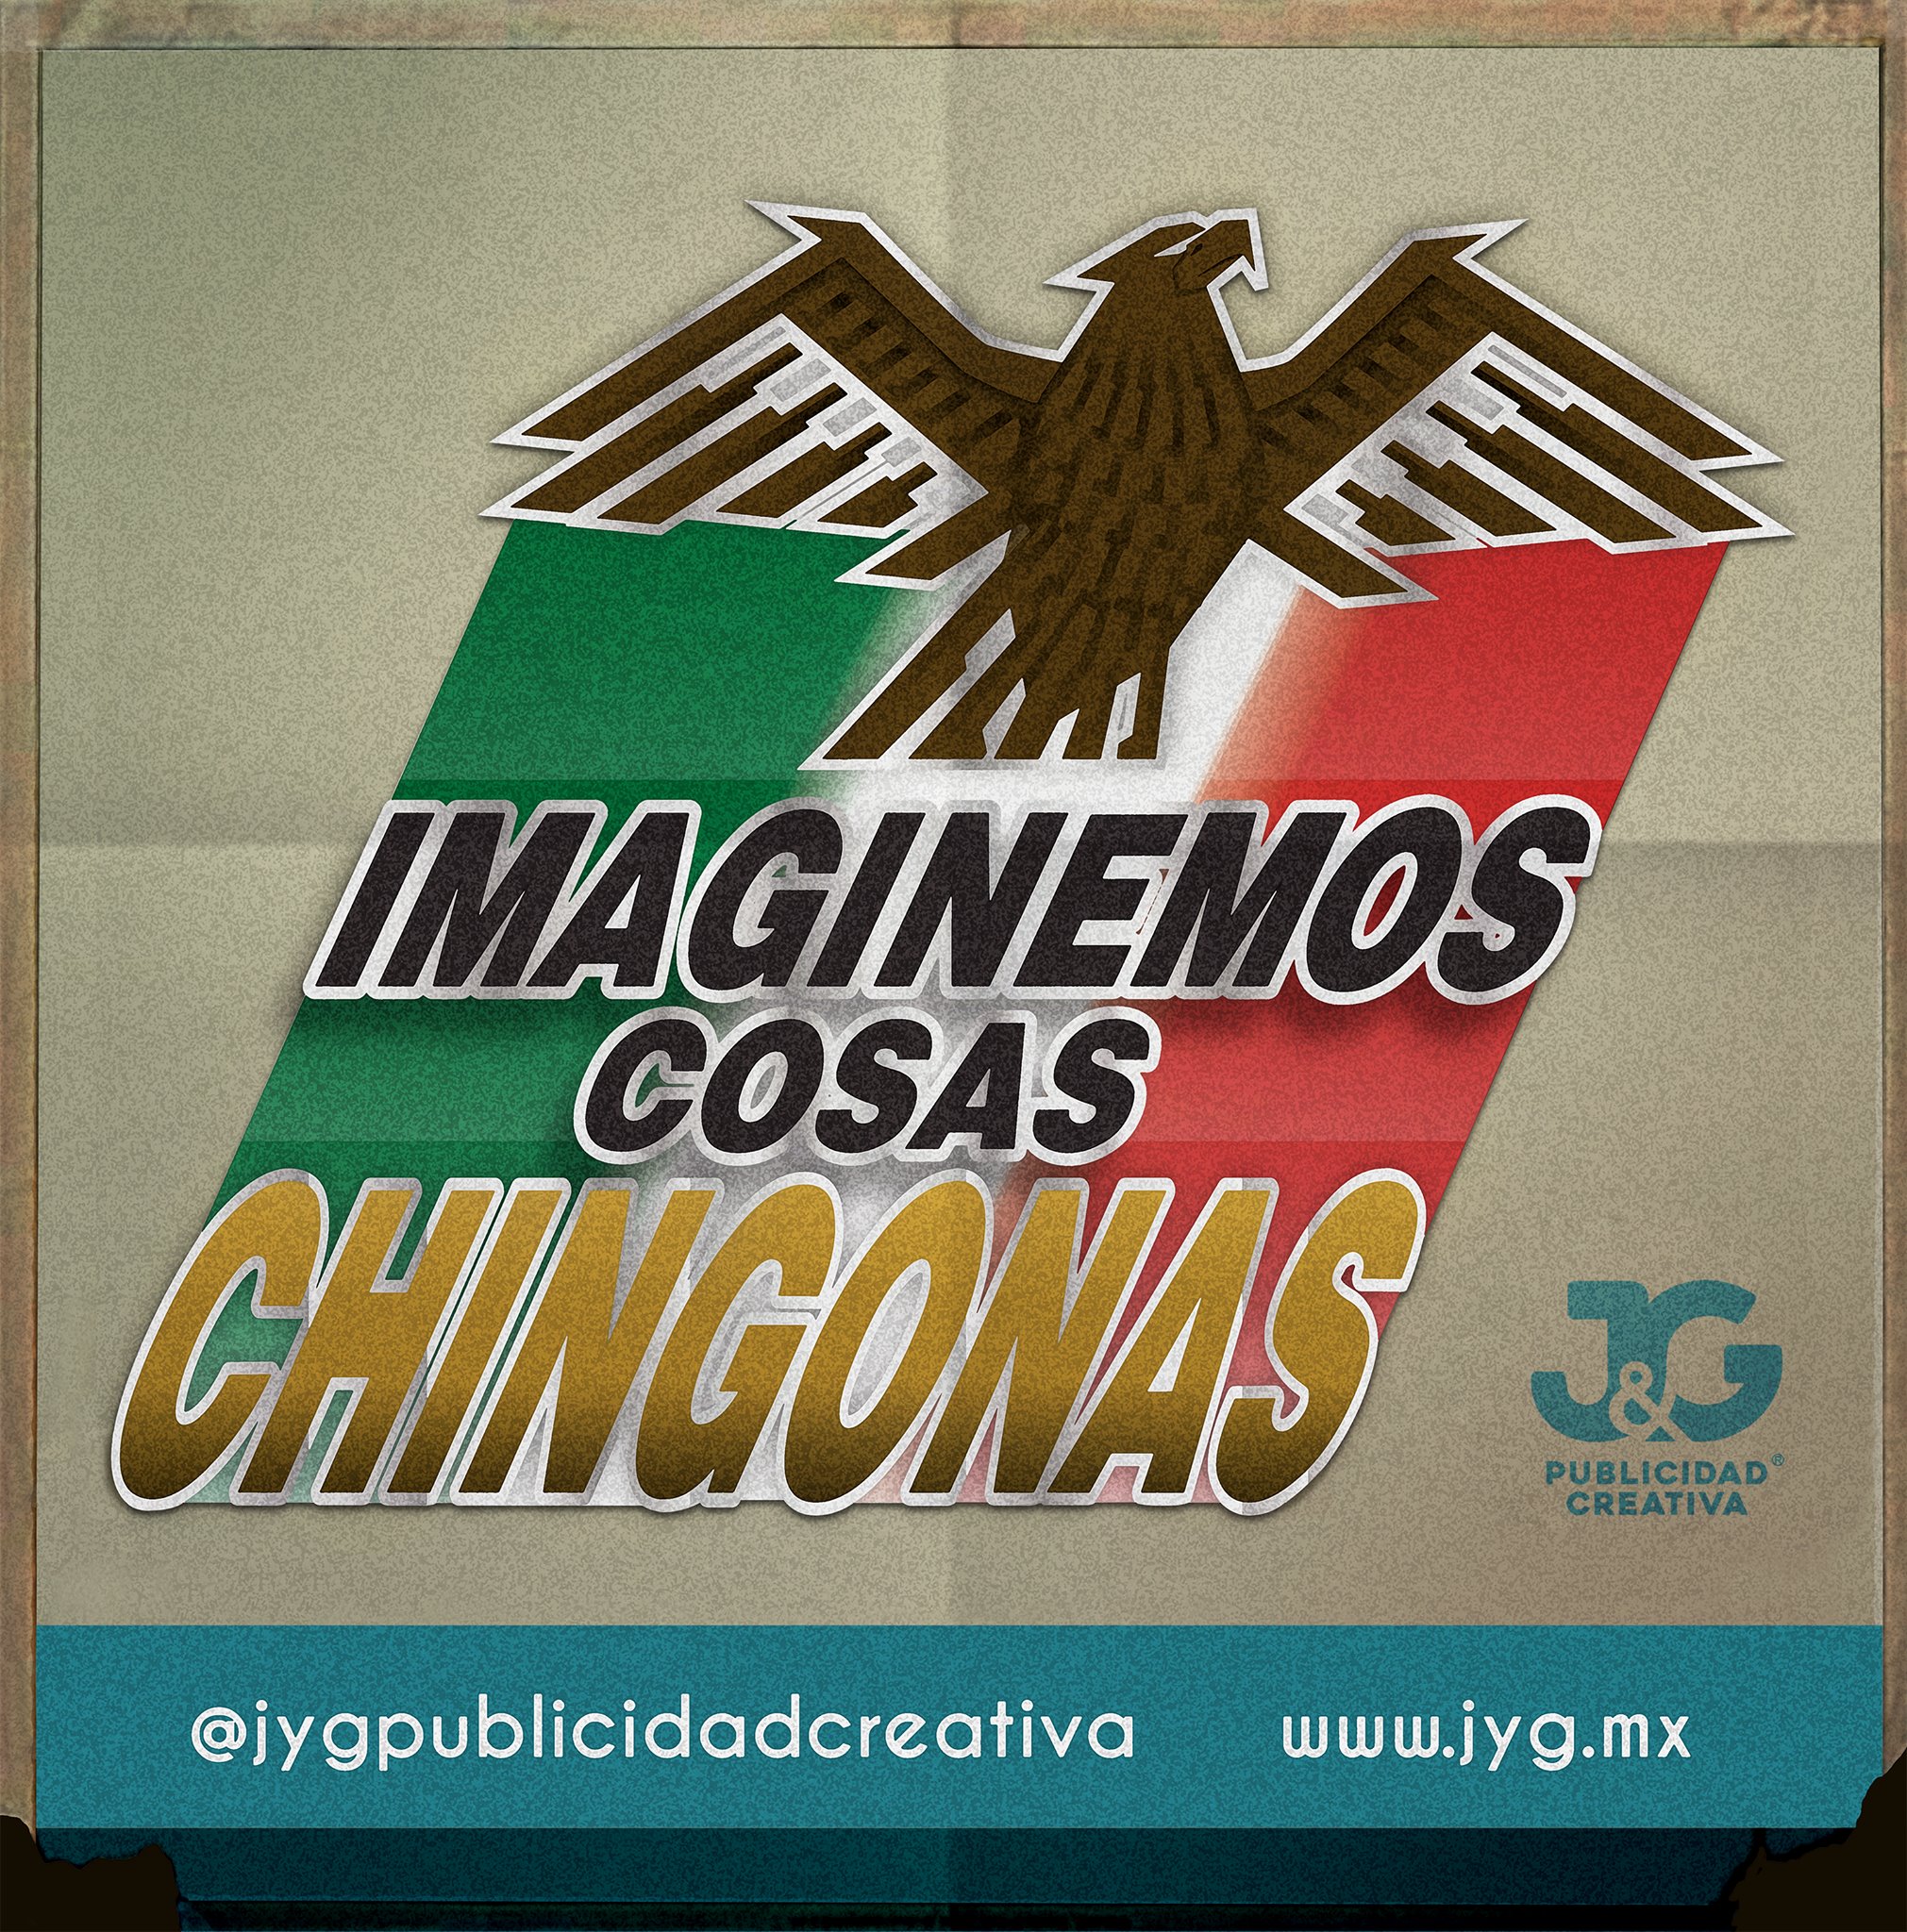 ¡Es tiempo de imaginar cosas chingonas! Vota 📝🗳️ y apoya a la selección 🏆 ¡Vamos México! 🇲🇽️